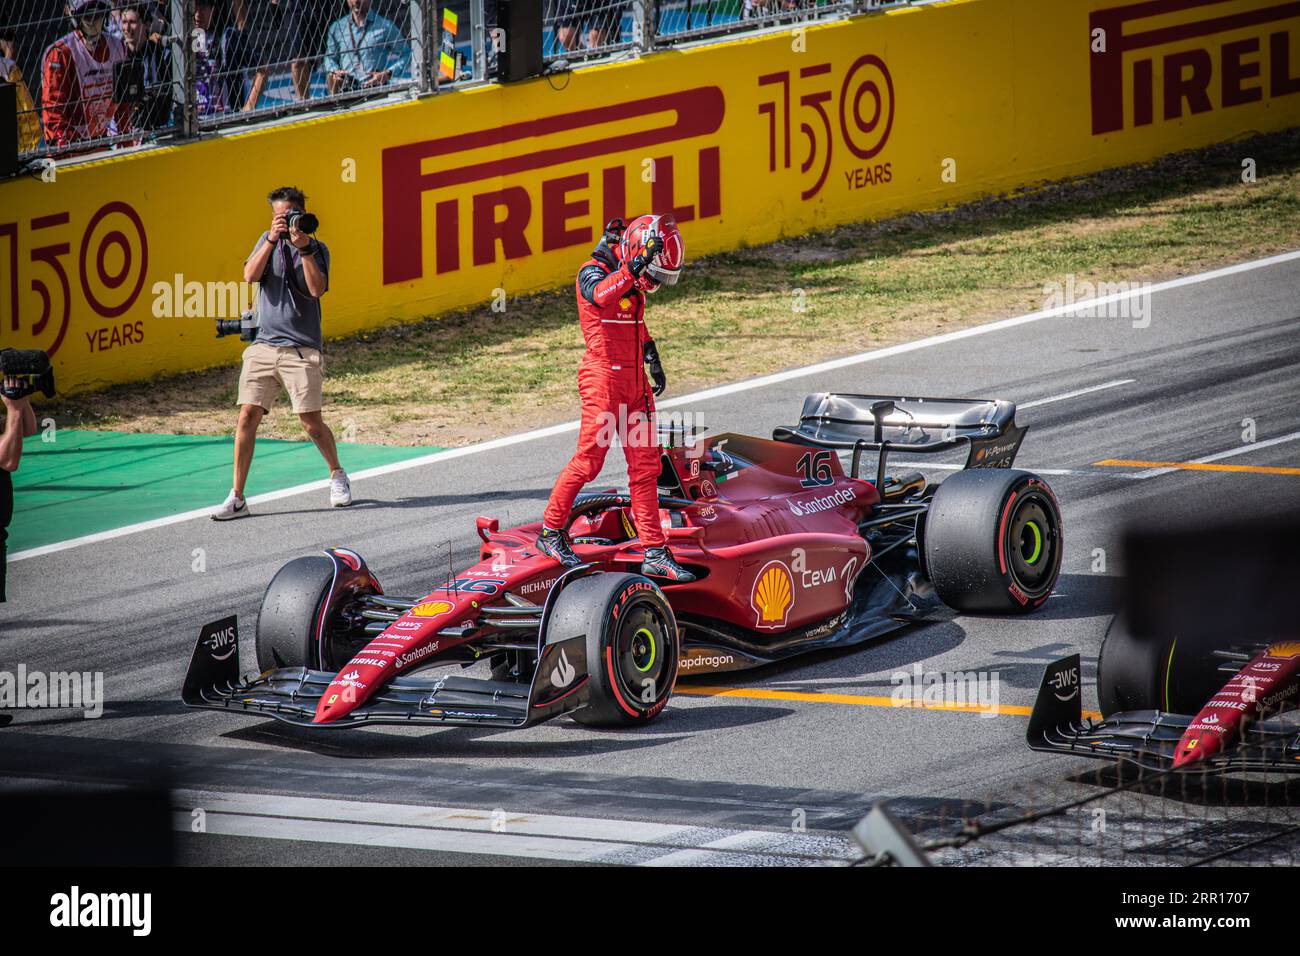 Charles Leclerc esce dalla sua Ferrari subito dopo aver conquistato il primo posto nella sessione di qualificazione e aver ottenuto la pole position. Foto Stock